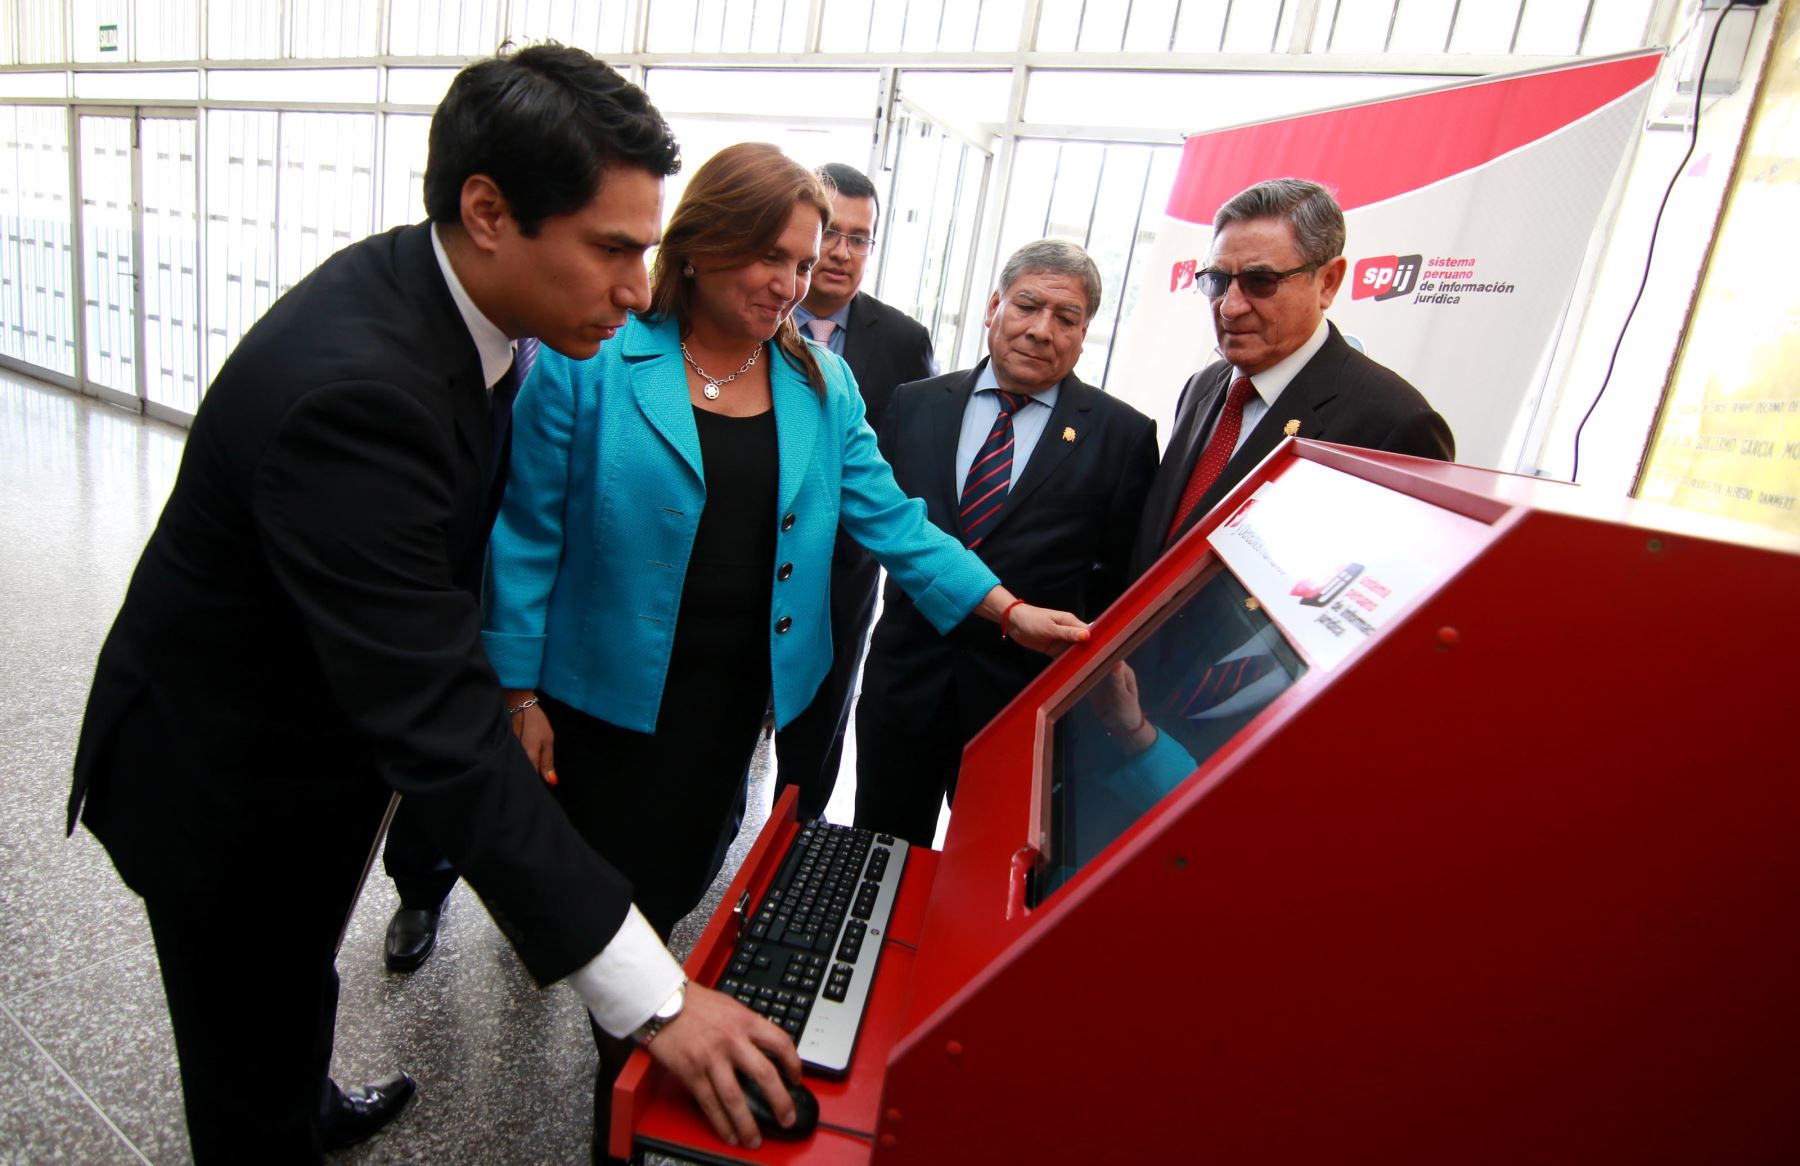 La ministra de Justricia, Marisol Pérez Tello, hace una demostración del funcionamiento del SIPJ.